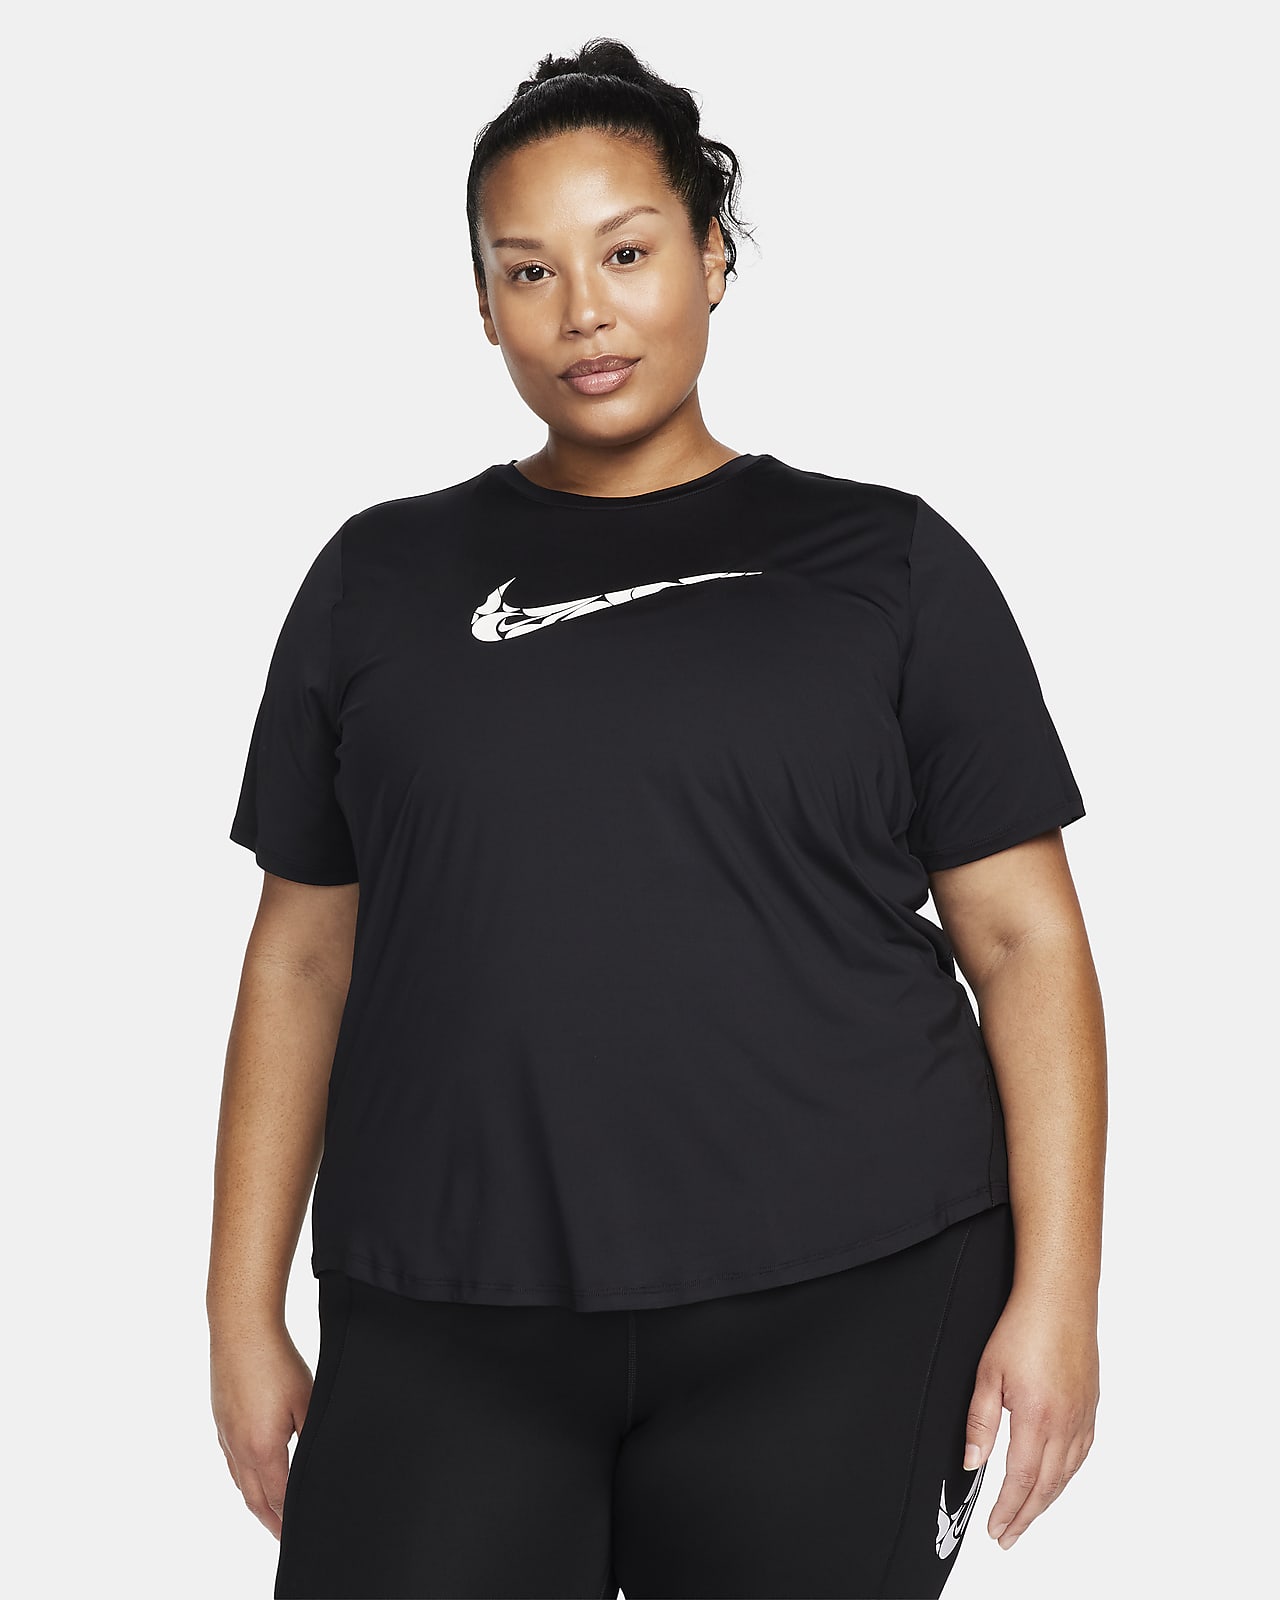 Dámské běžecké tričko Dri-FIT Nike One Swoosh s krátkým rukávem (větší velikost)